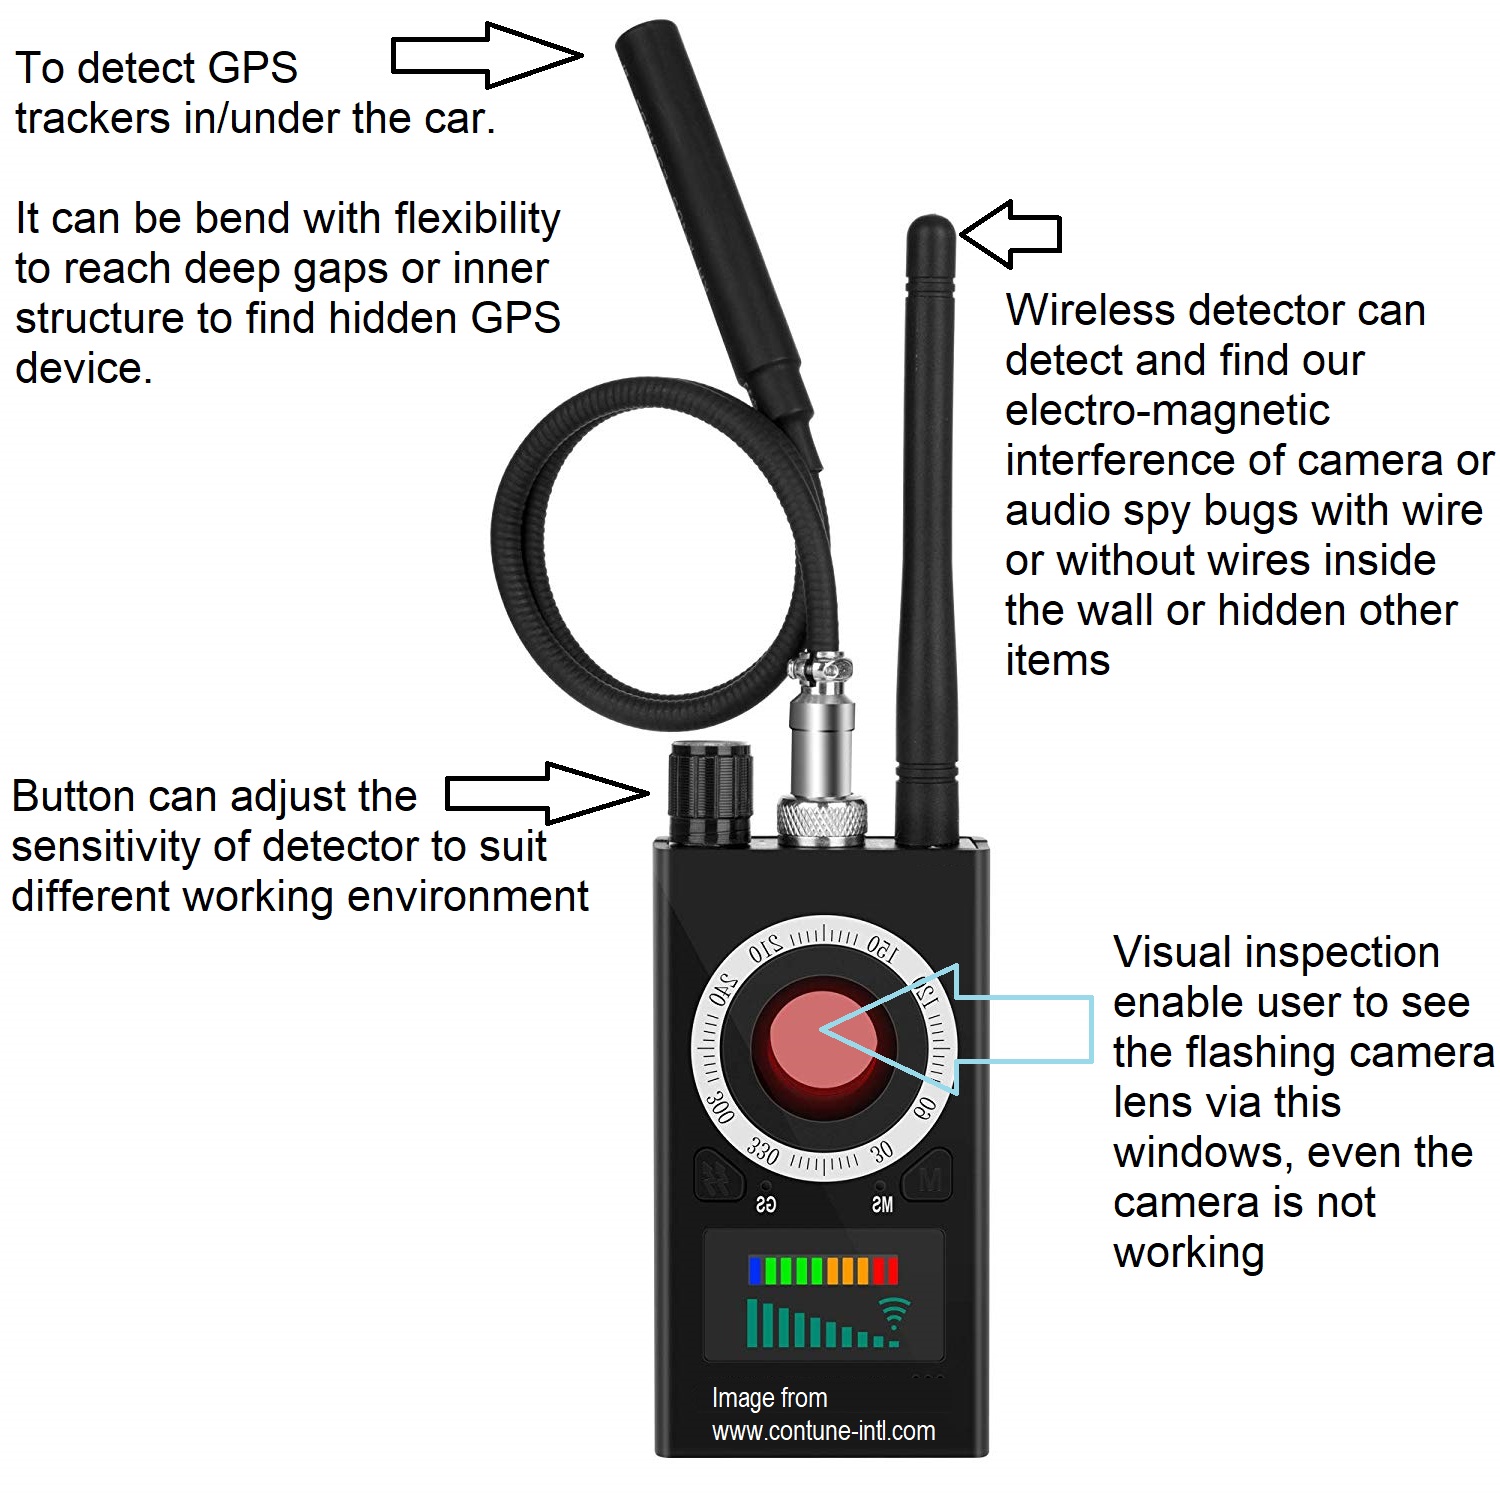 Détecteur Anti Spy pour caméra cachée, trackers GPS